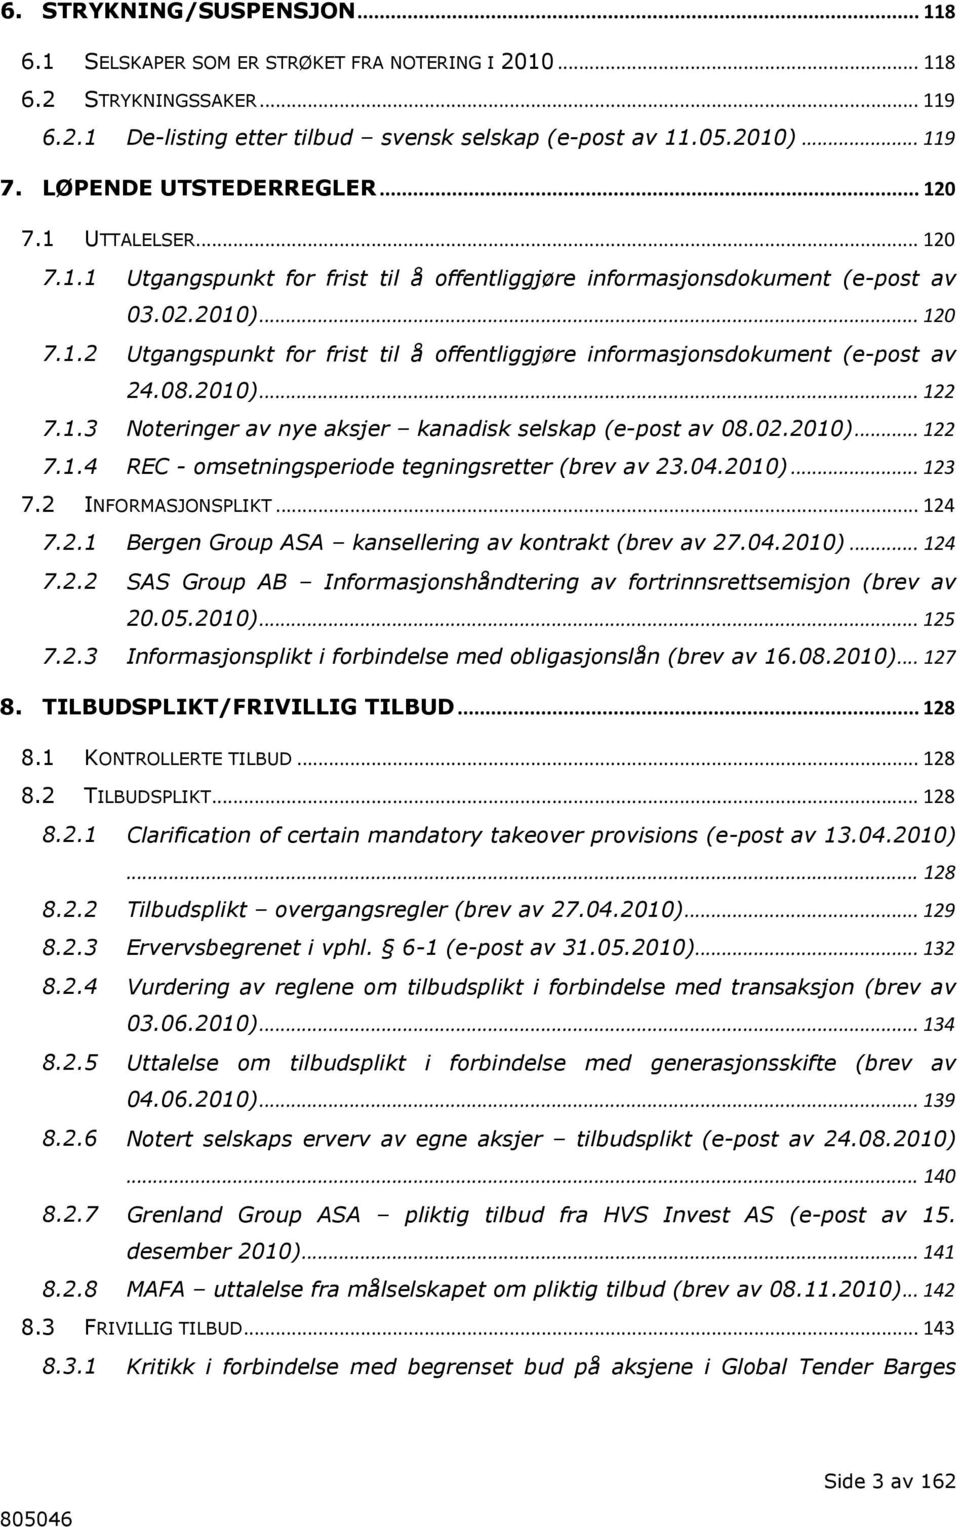 08.2010)... 122 7.1.3 Noteringer av nye aksjer kanadisk selskap (e-post av 08.02.2010)... 122 7.1.4 REC - omsetningsperiode tegningsretter (brev av 23.04.2010)... 123 7.2 INFORMASJONSPLIKT... 124 7.2.1 Bergen Group ASA kansellering av kontrakt (brev av 27.